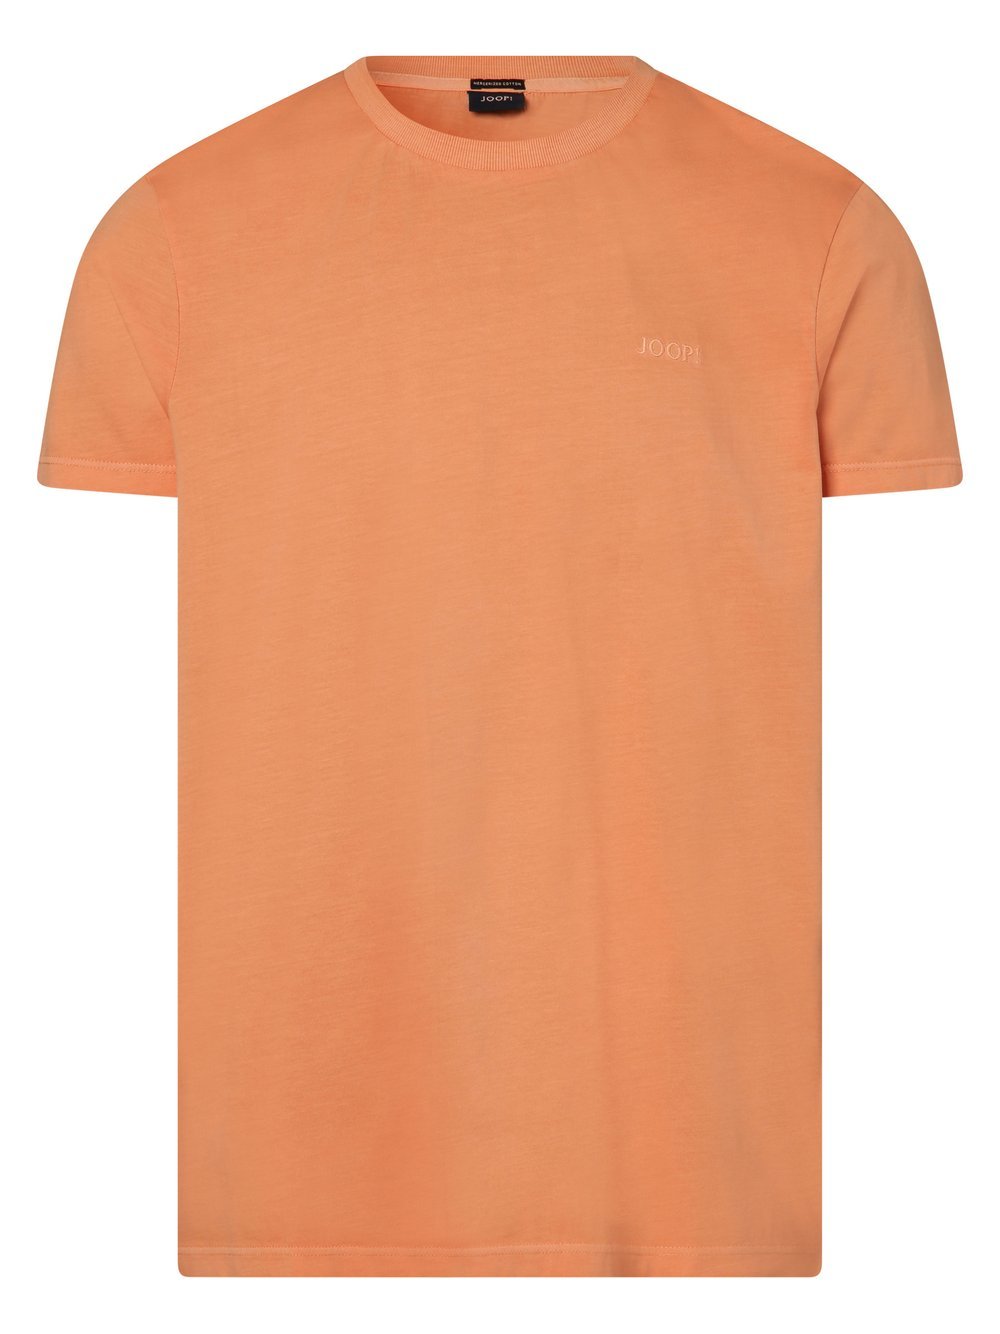 Joop - T-shirt męski  Paris, pomarańczowy